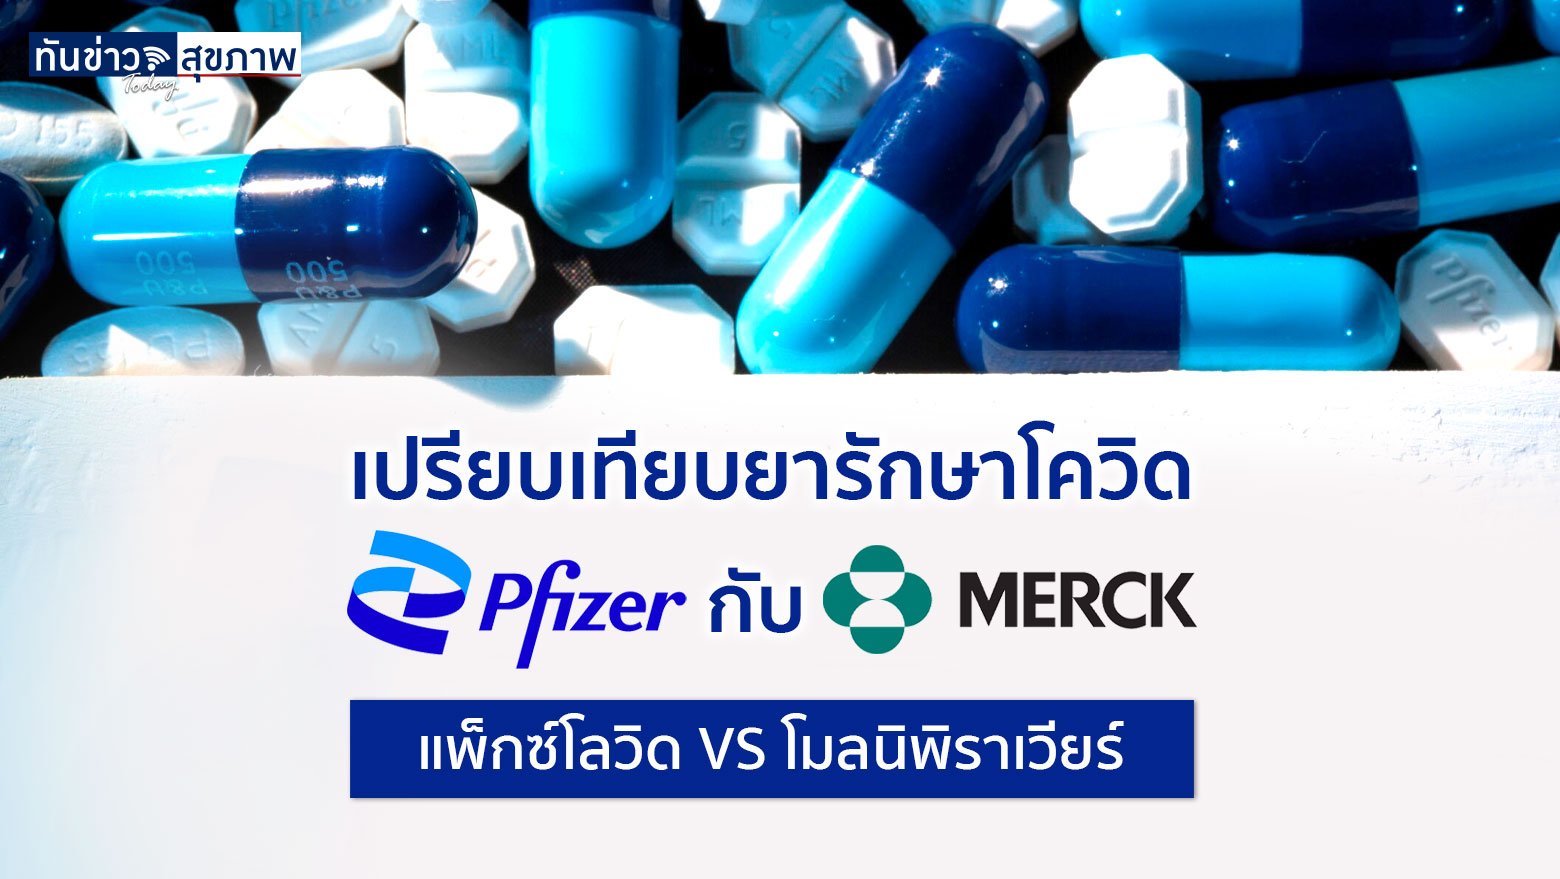 Pfizer เผยผลทดลองยารักษาโควิดระยะที่ 3 ประสิทธิภาพสูง 89%  สูงกว่ายา Molnipiravir ของ Merck ที่ 50%